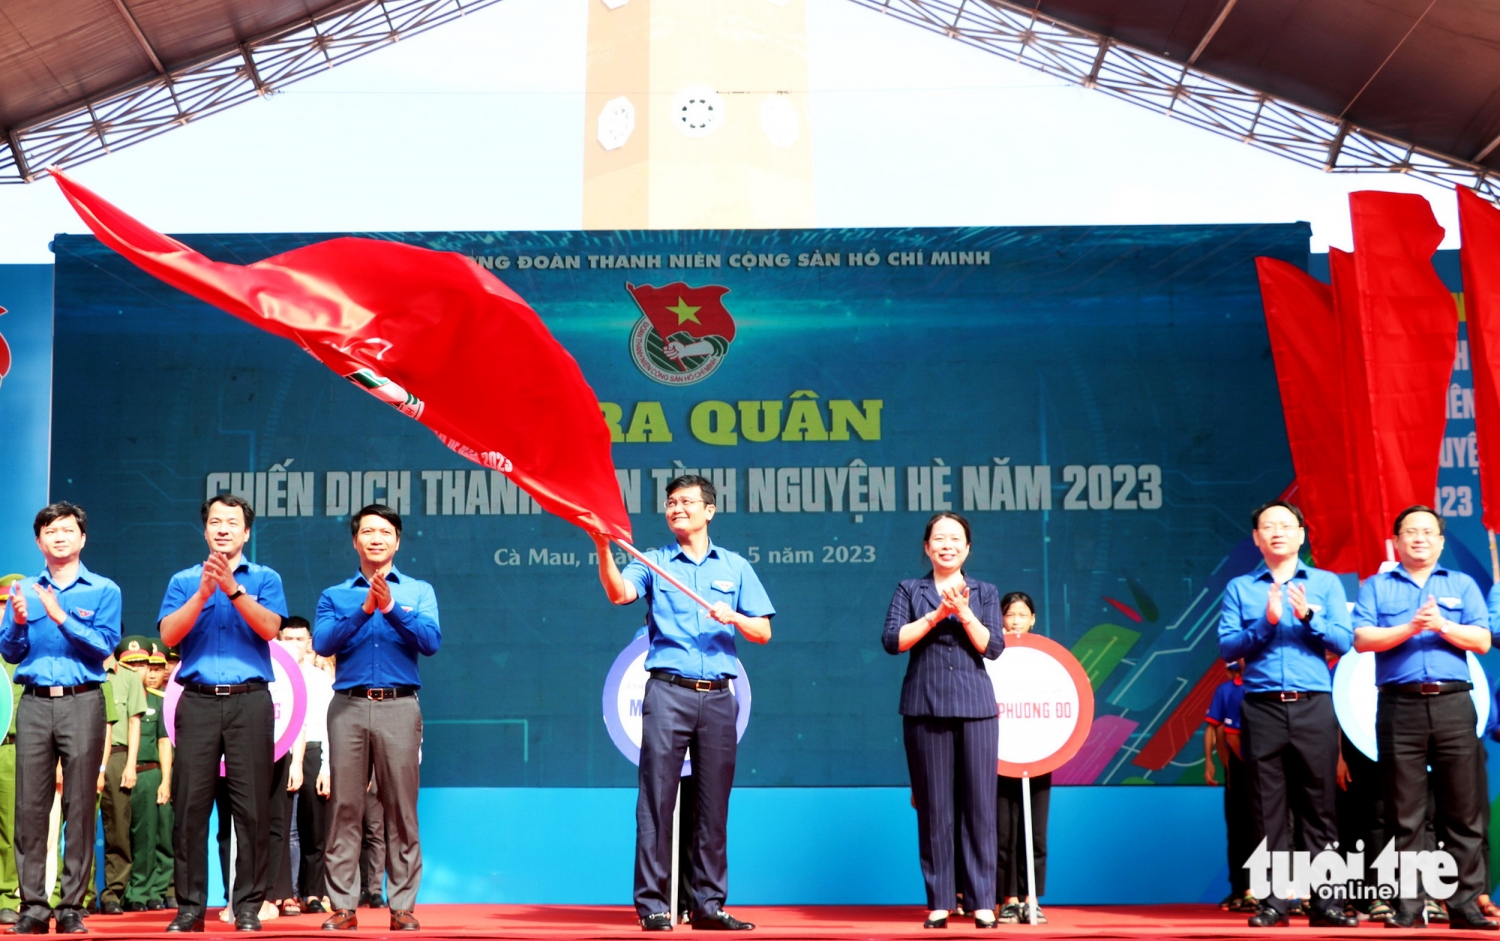 Trung ương Đoàn tổ chức lễ ra quân Chiến dịch Thanh niên tình nguyện hè 2023 tại Cà Mau